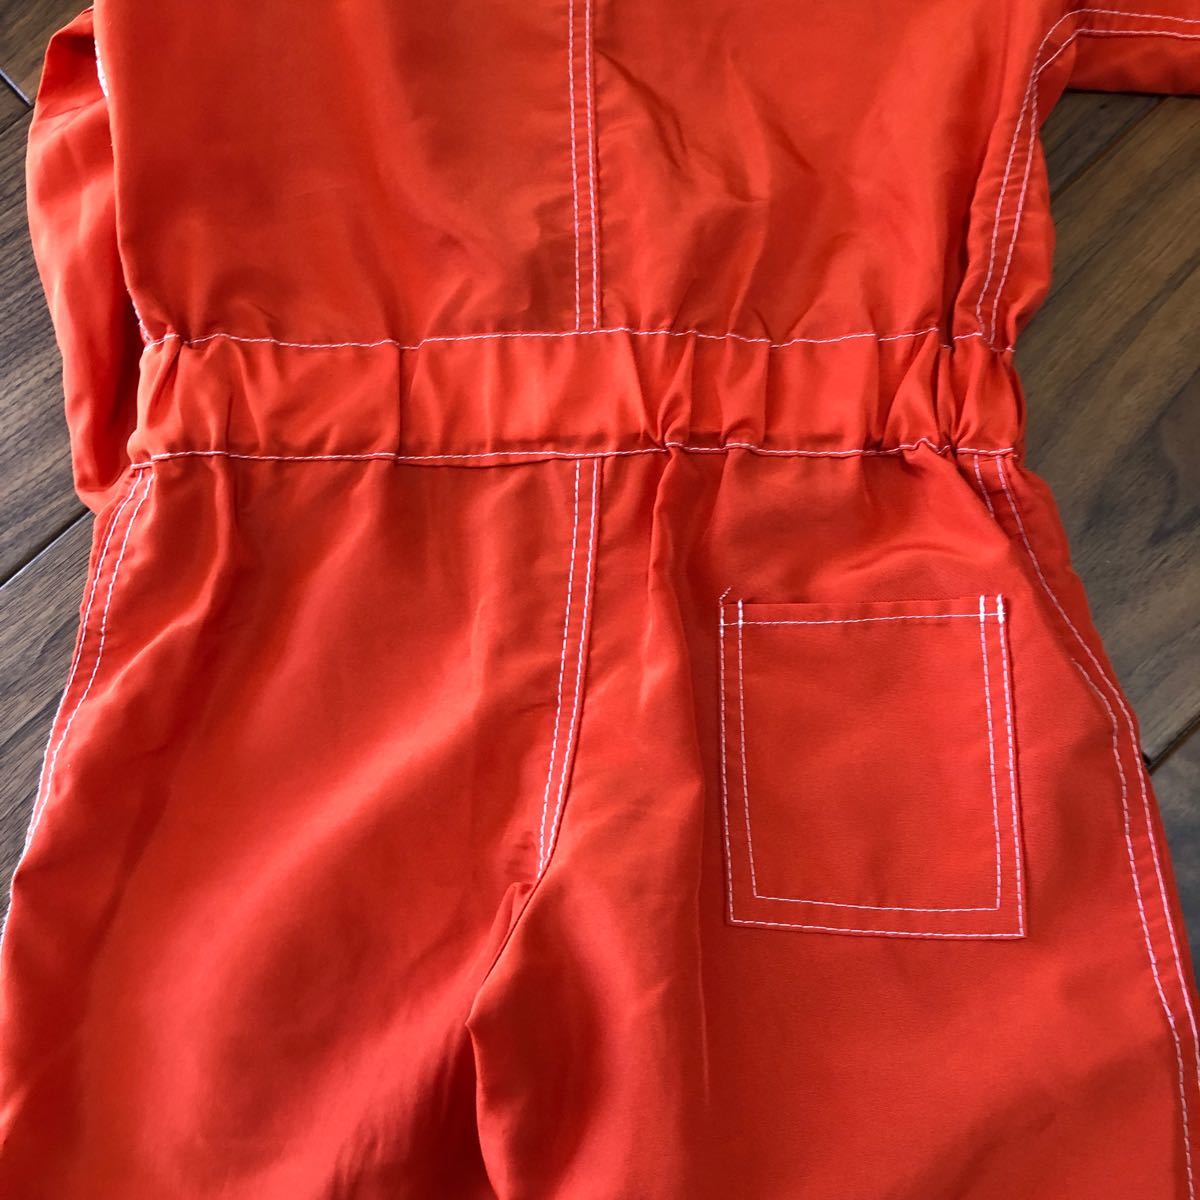 美品宇宙飛行士衣装コスプレキッズハロウィン90100110 NASA